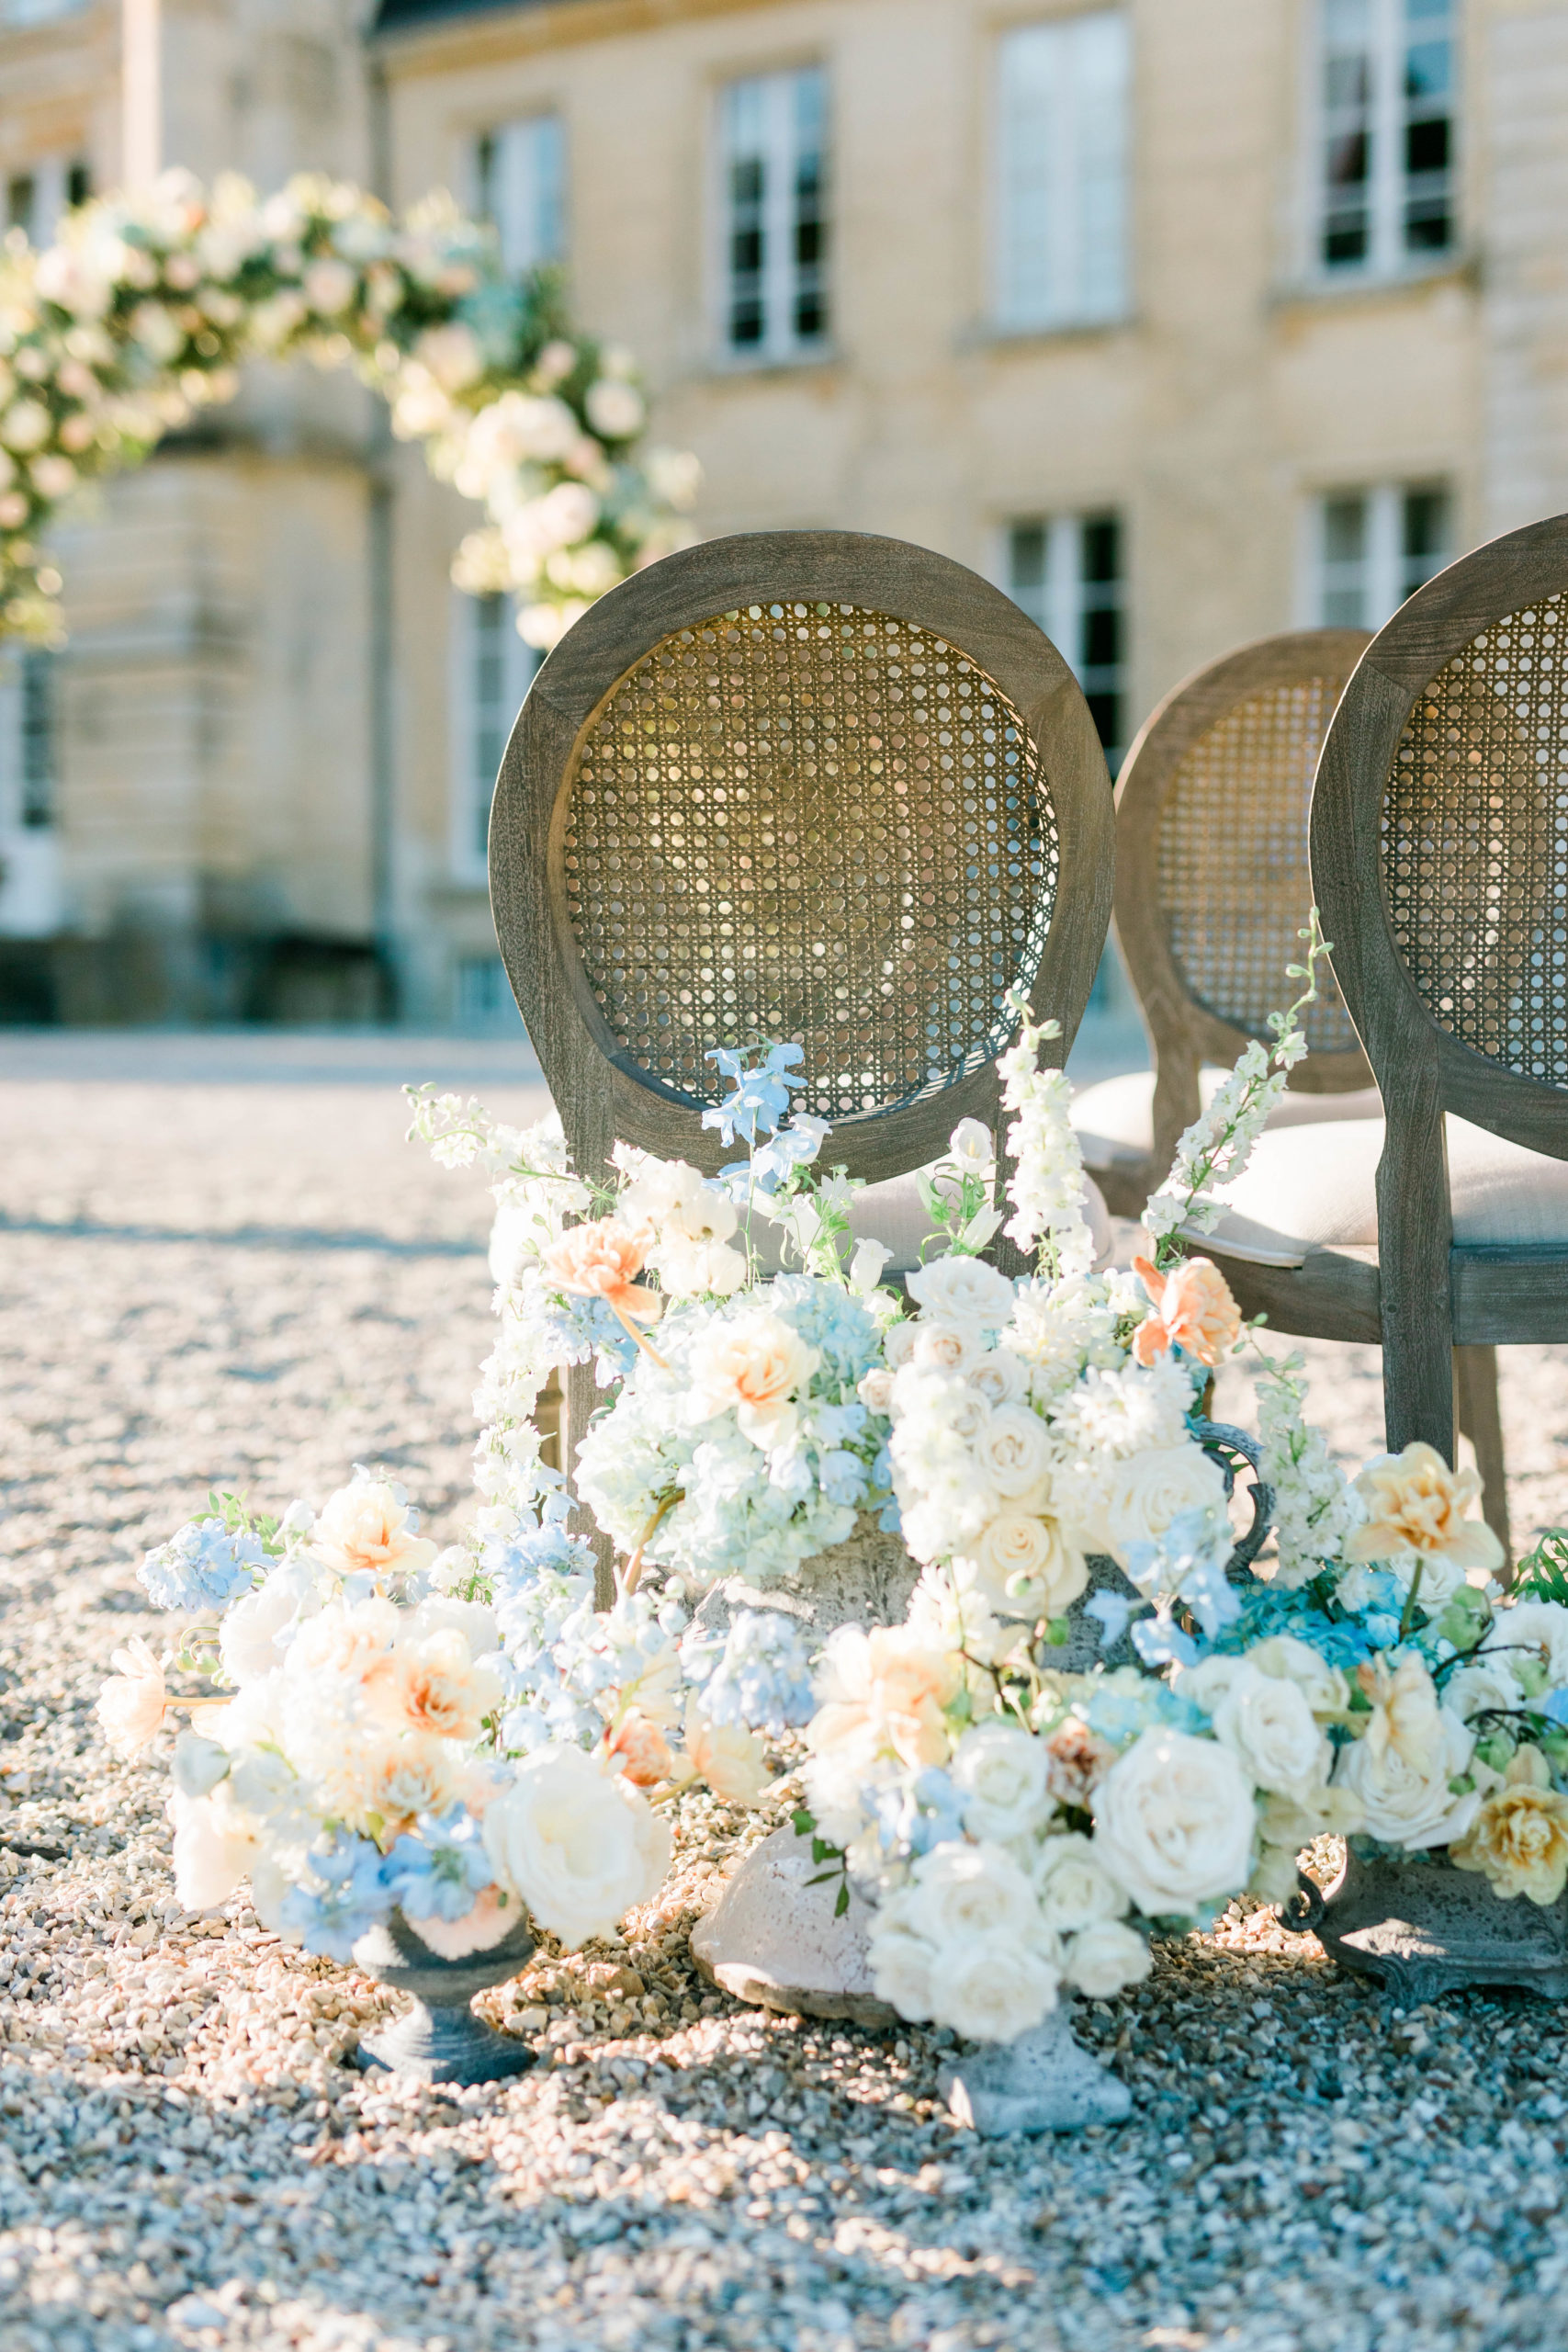 florals around chairs during ceremony at destination wedding in Paris